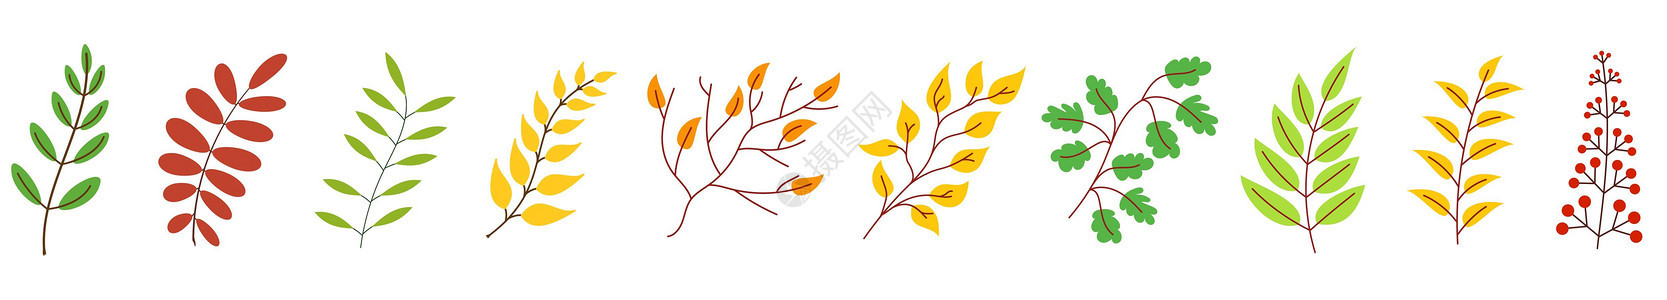 秋叶 秋叶系列 矢量插图生态天气植物群季节植物植物学艺术绘画木头叶子图片